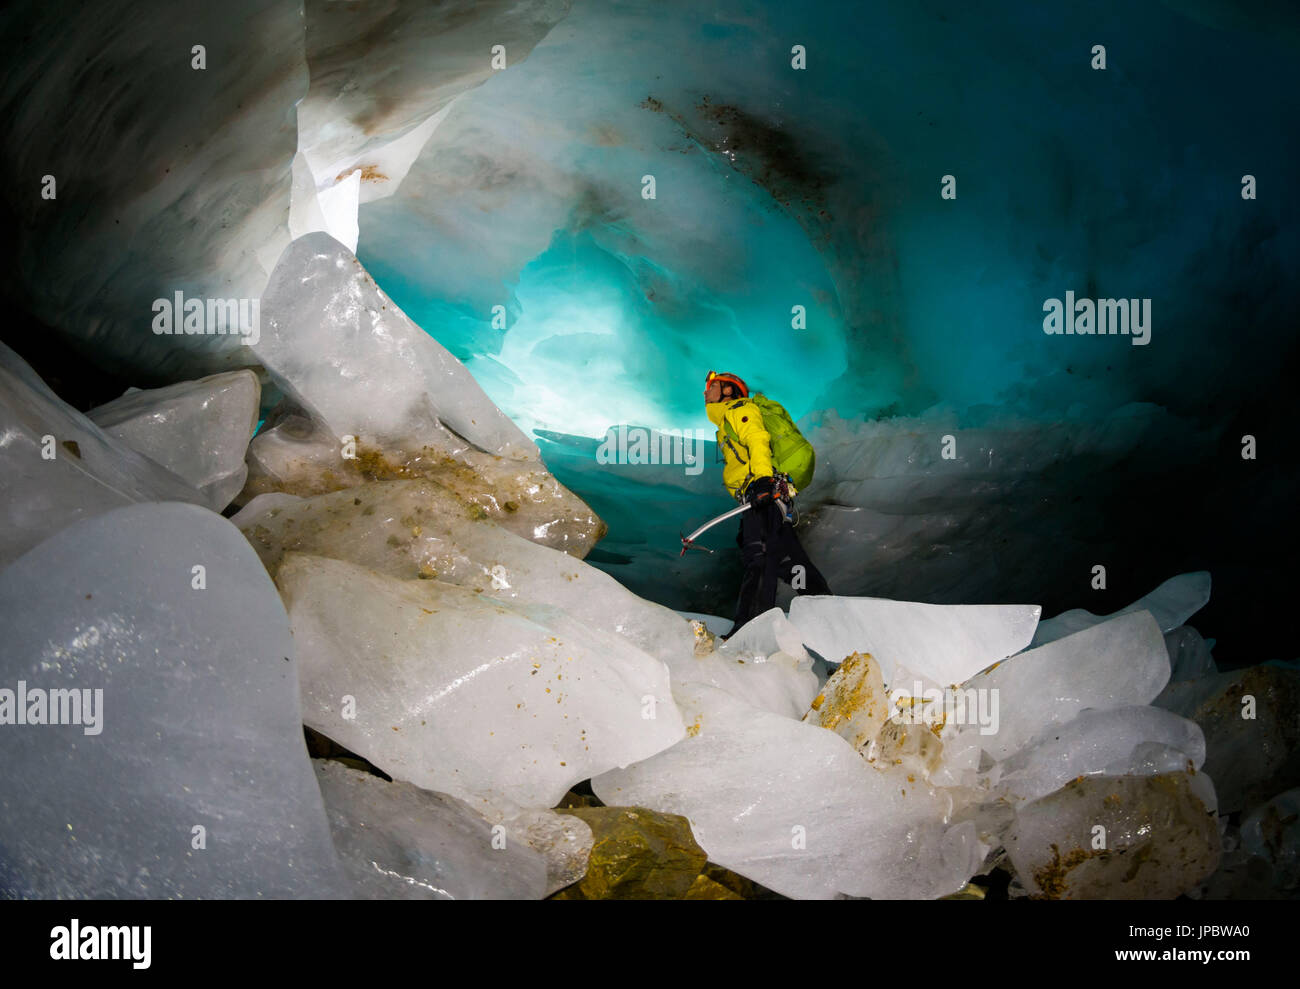 Ice cave, Paradisin glacier, Livigno Valley, Lombardy, Italy Stock Photo